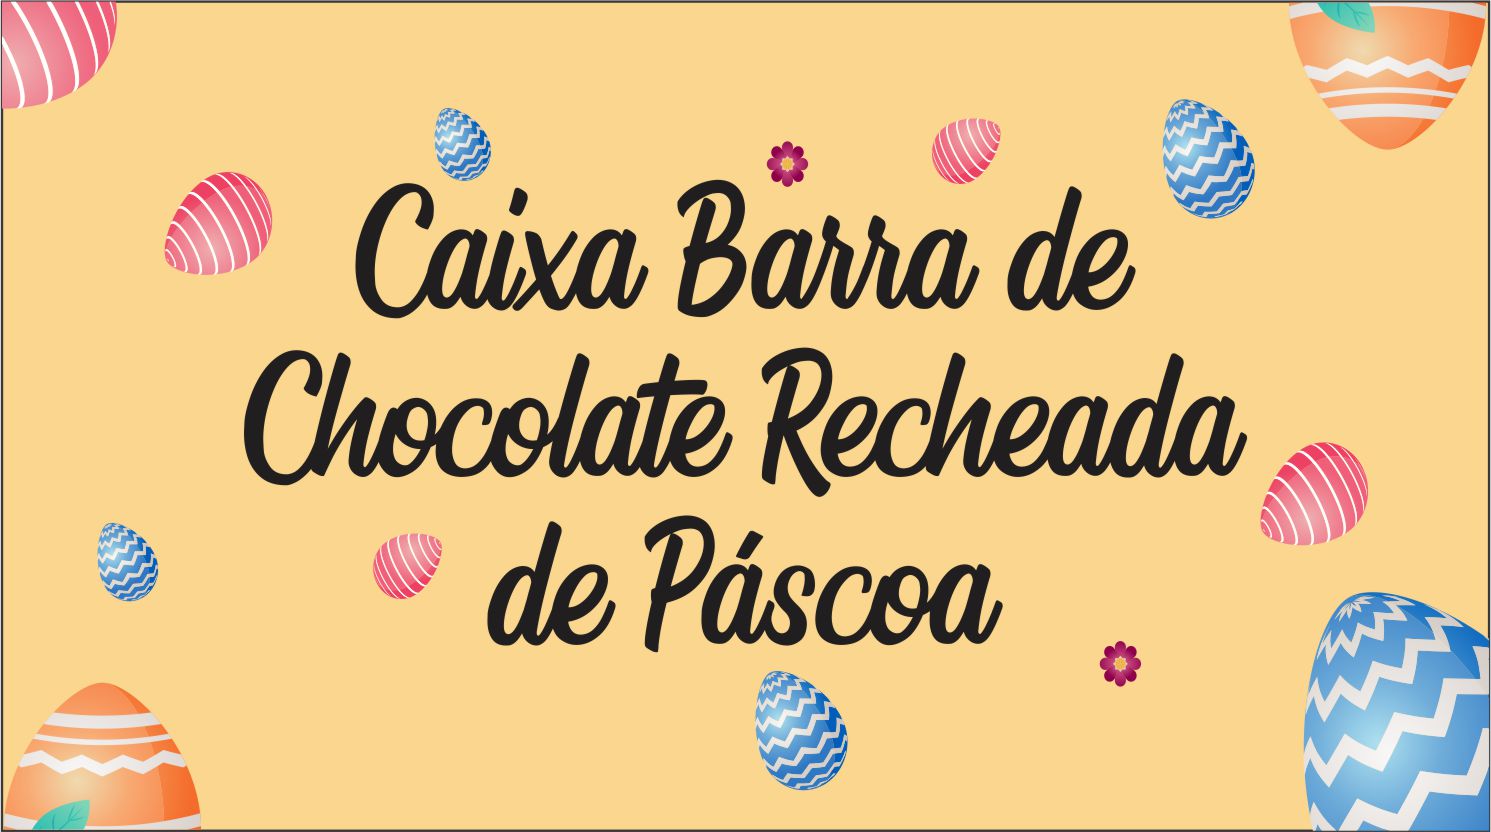 Caixa Barra de Chocolate Recheada de Pascoa Para Imprimir Grátis